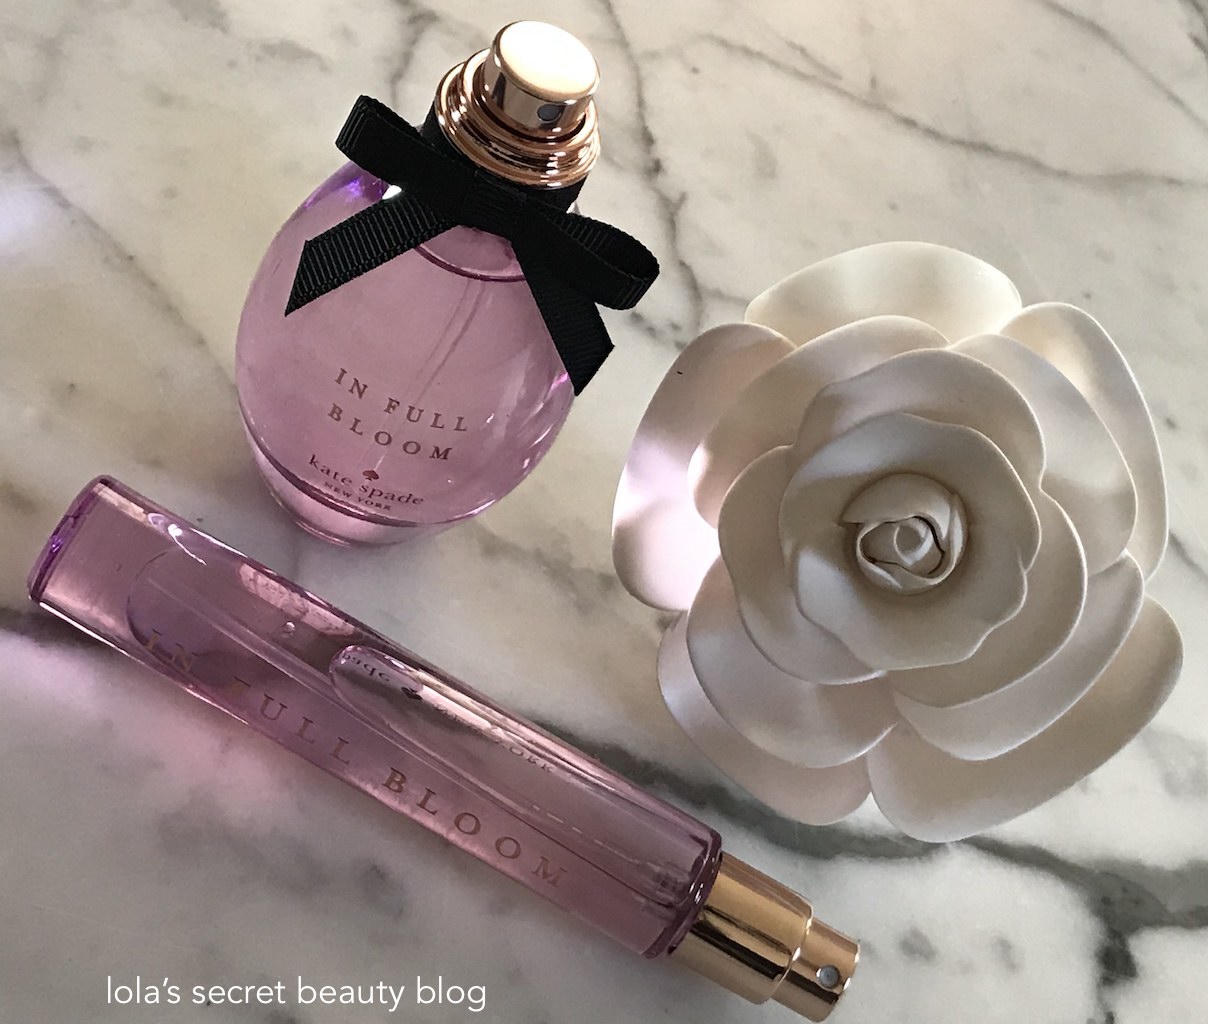 lola's secret beauty blog: Kate Spade In Full Bloom Eau de Parfum Review